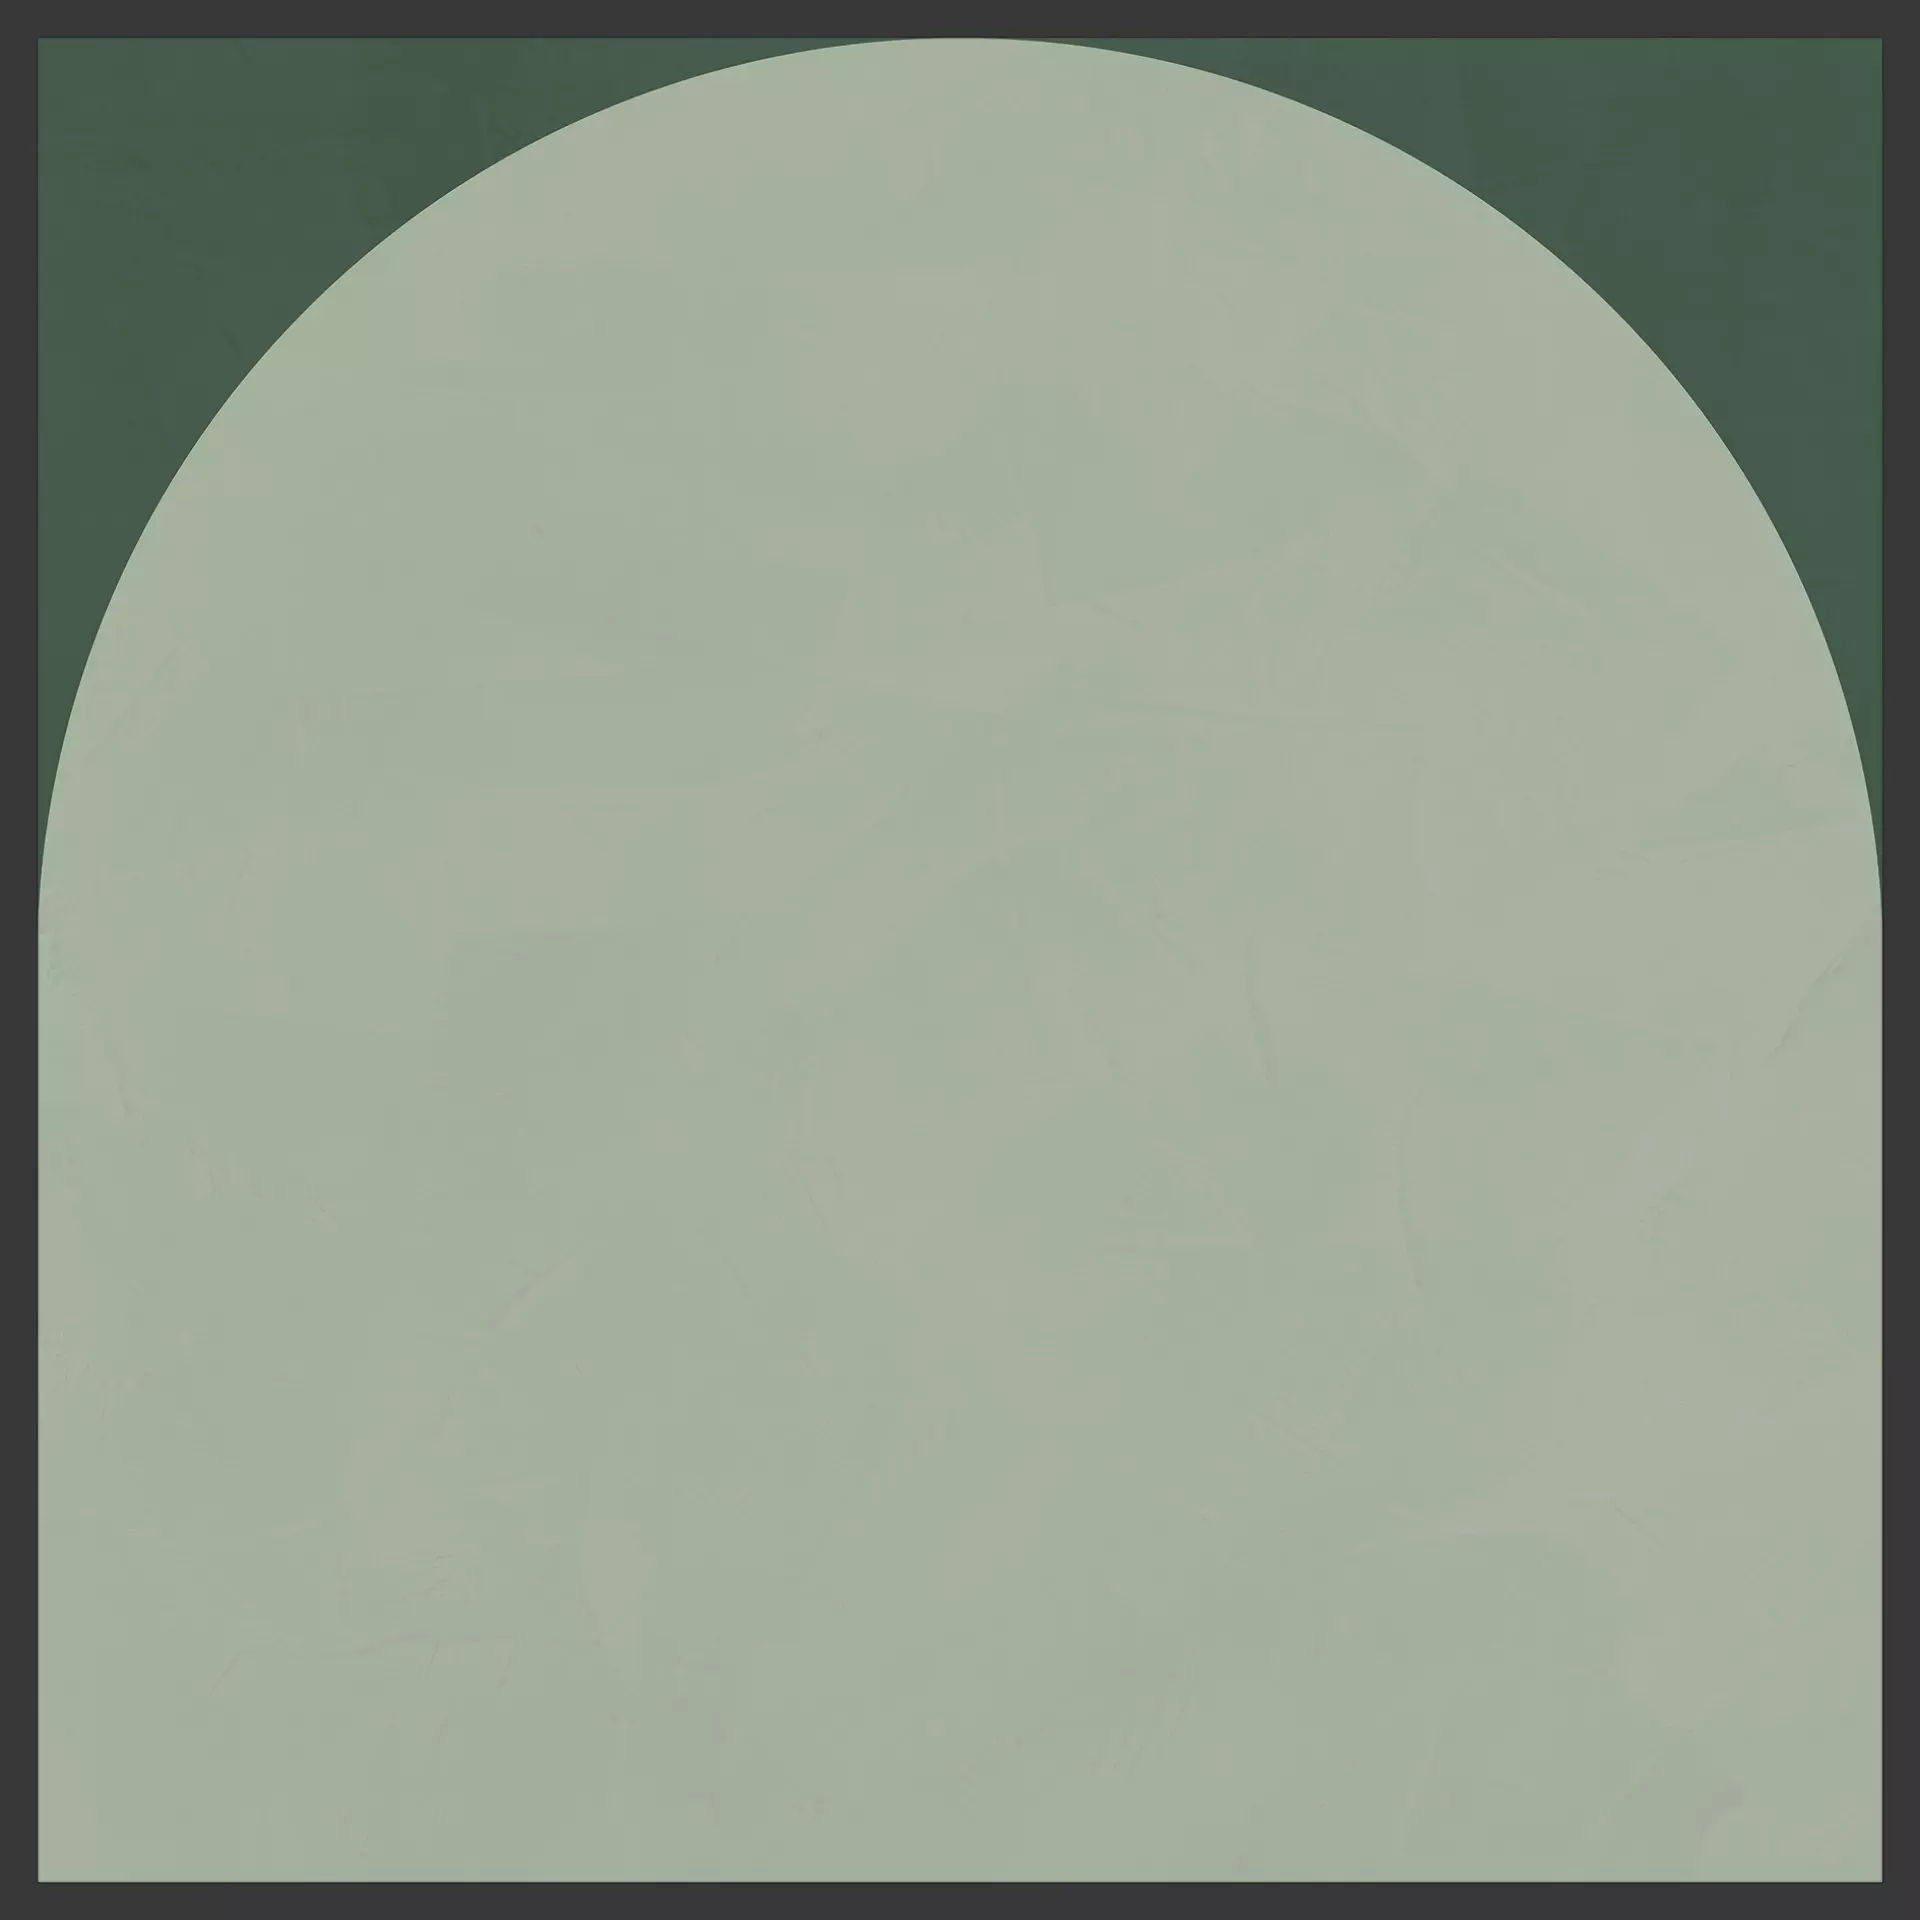 Cedit Policroma Lichene – Conifera Naturale – Matt Decor Arco 764120 120x120cm rectified 6mm